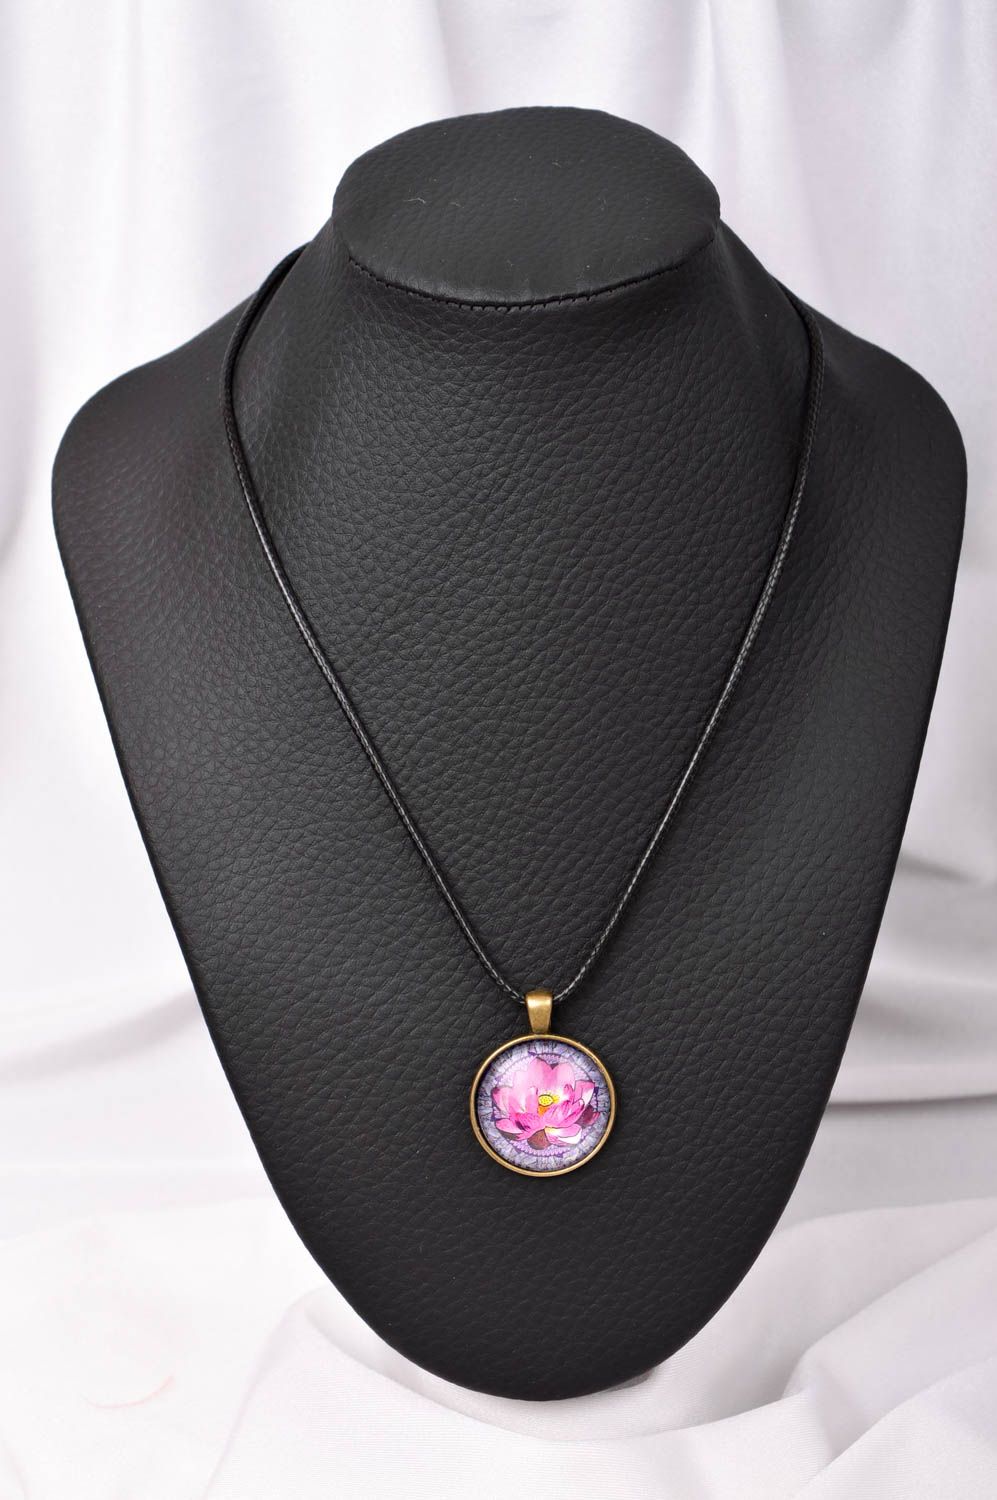 Handmade pendant on cord designer accessories for women glass pendant for women photo 1